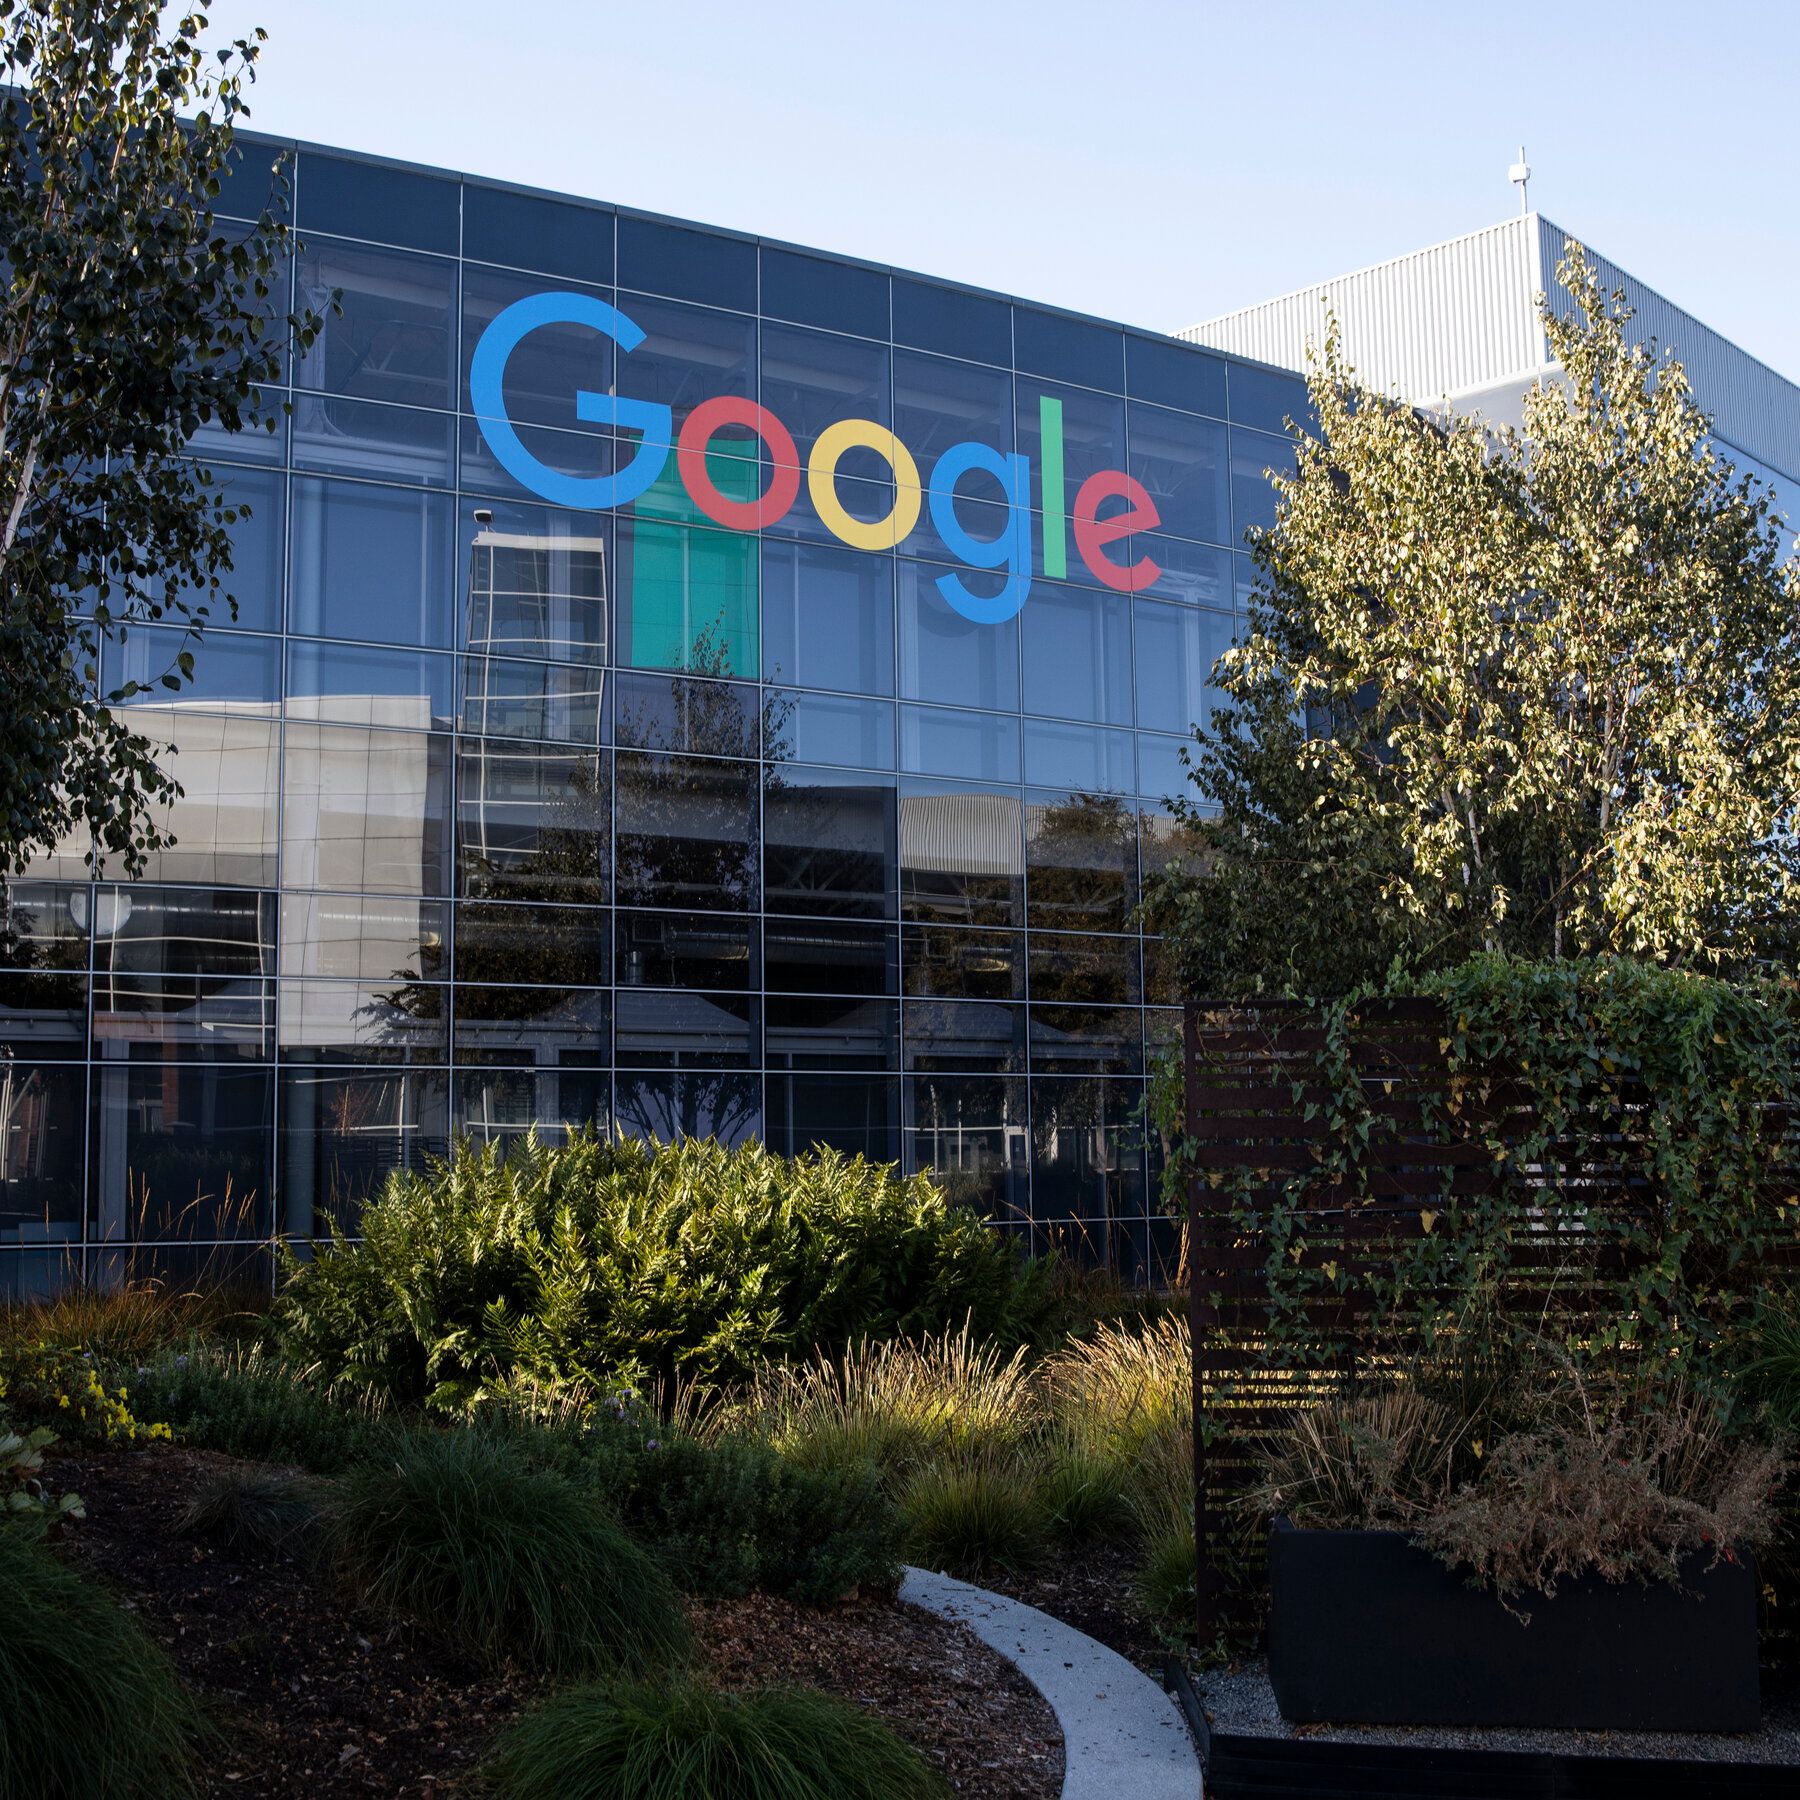 ¿Google ahora se llama Goggle o Gugle?